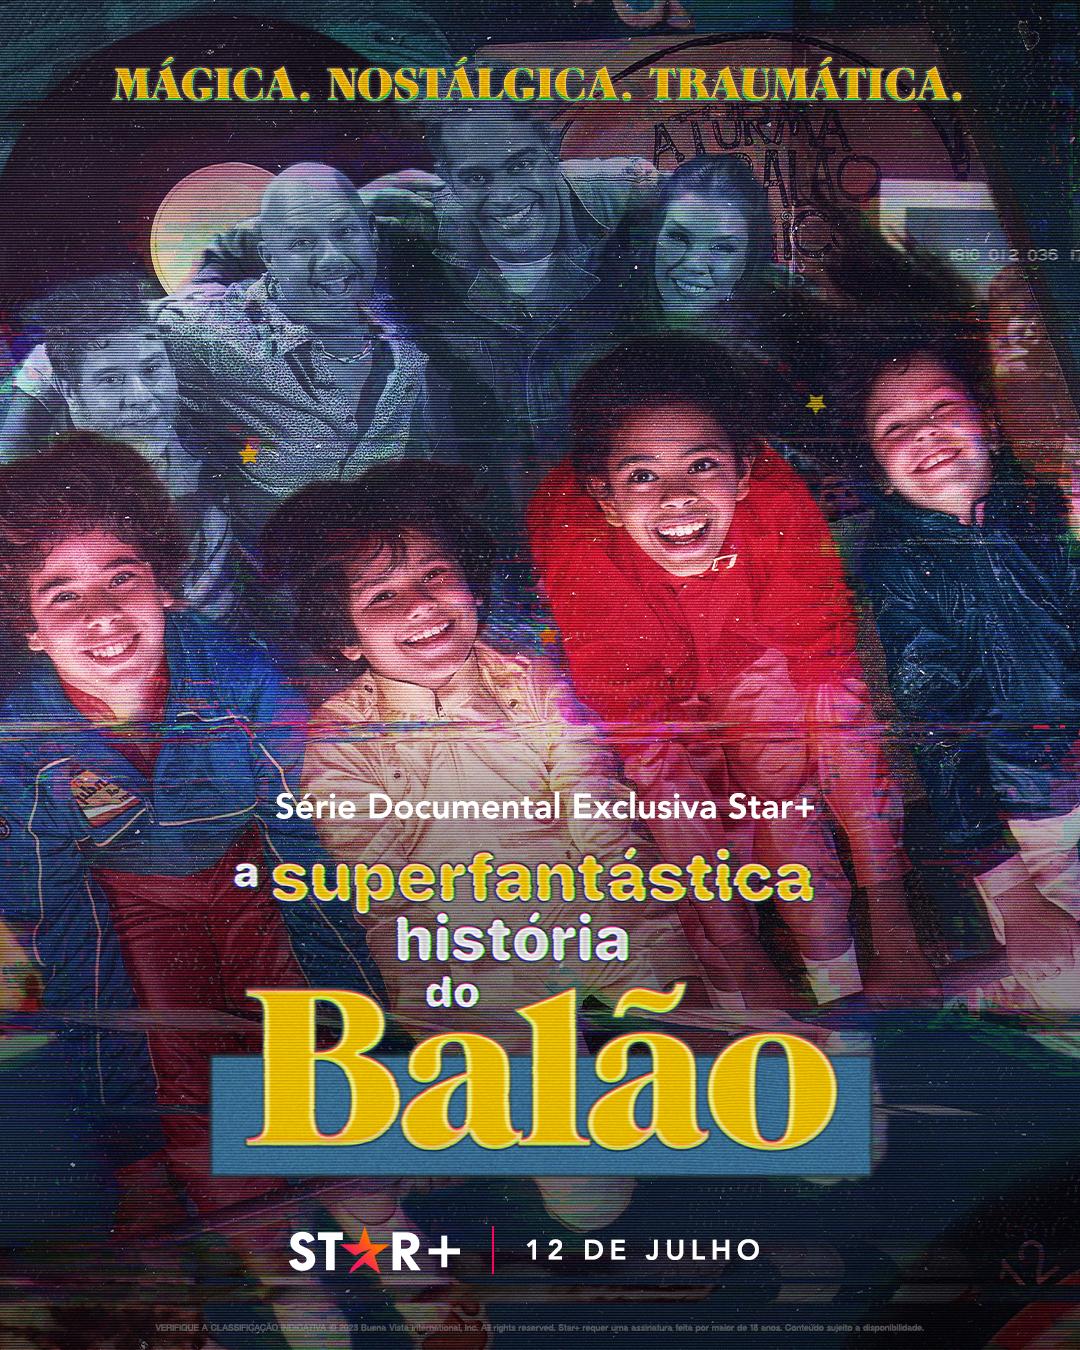 TV ratings for The Superfantastic Story Of Balão (A Superfantástica História Do Balão) in Poland. Star+ TV series